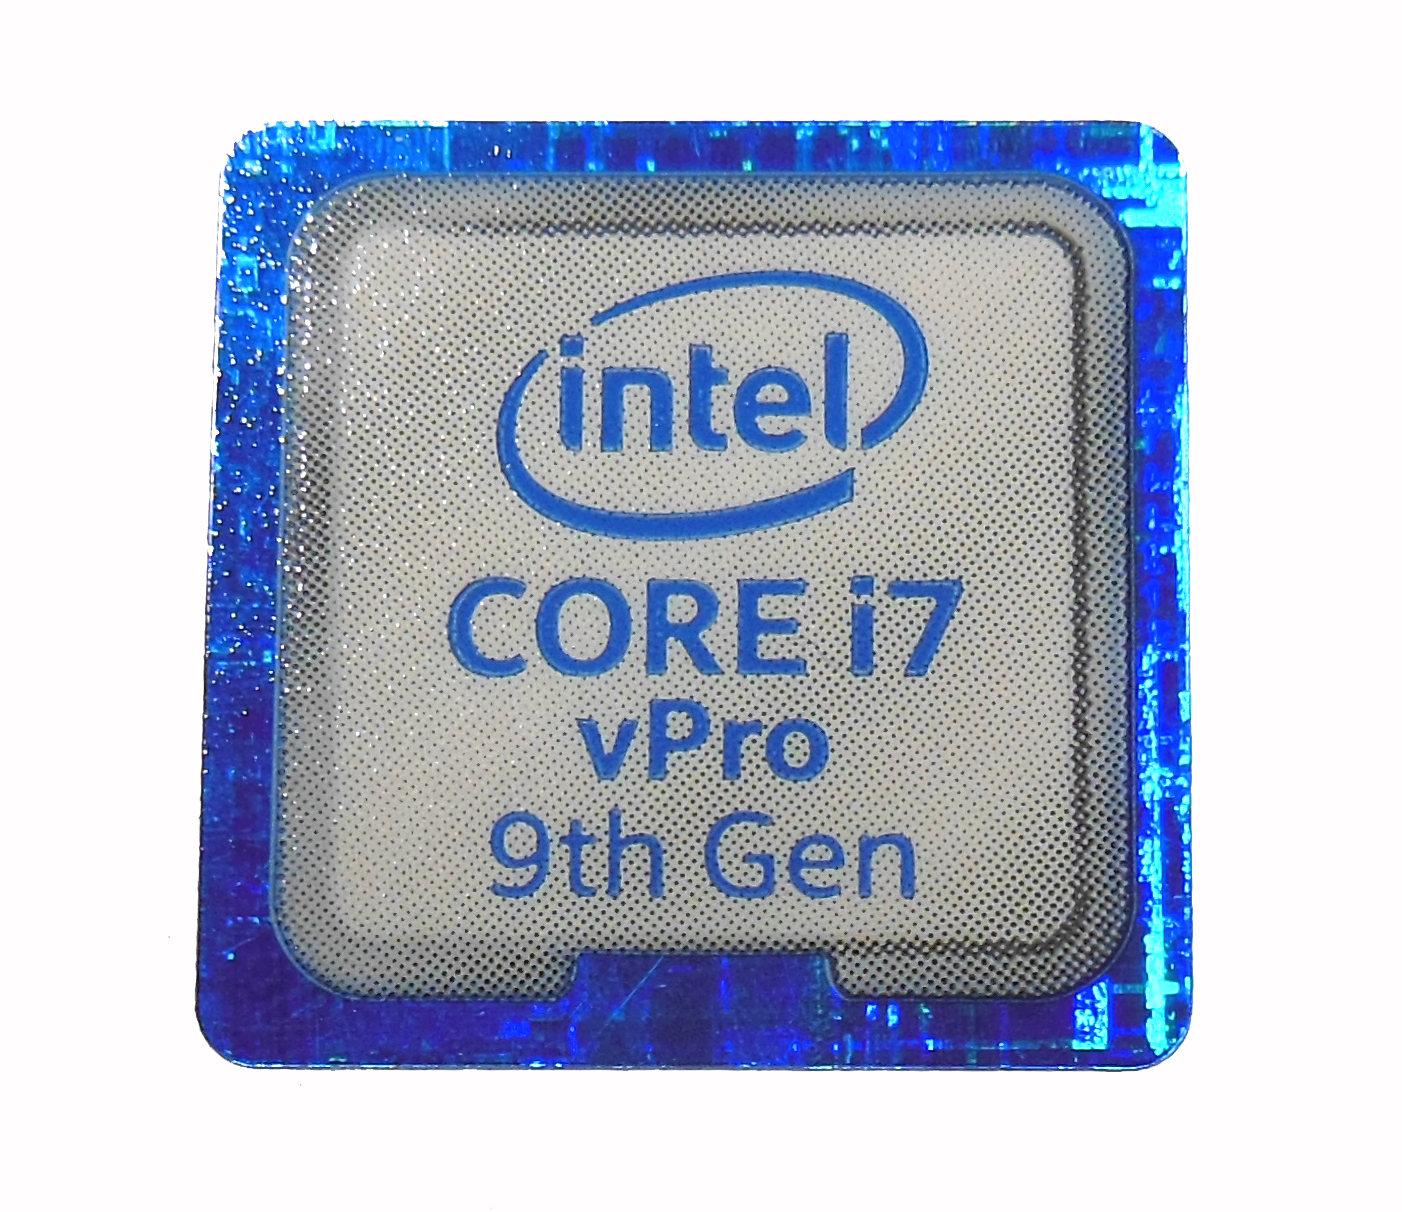 Core first. Процессор Intel Core i11. Intel Core i5 11 th Gen процессор. Intel Core i7 vpro. Intel Core i7 7th Gen.